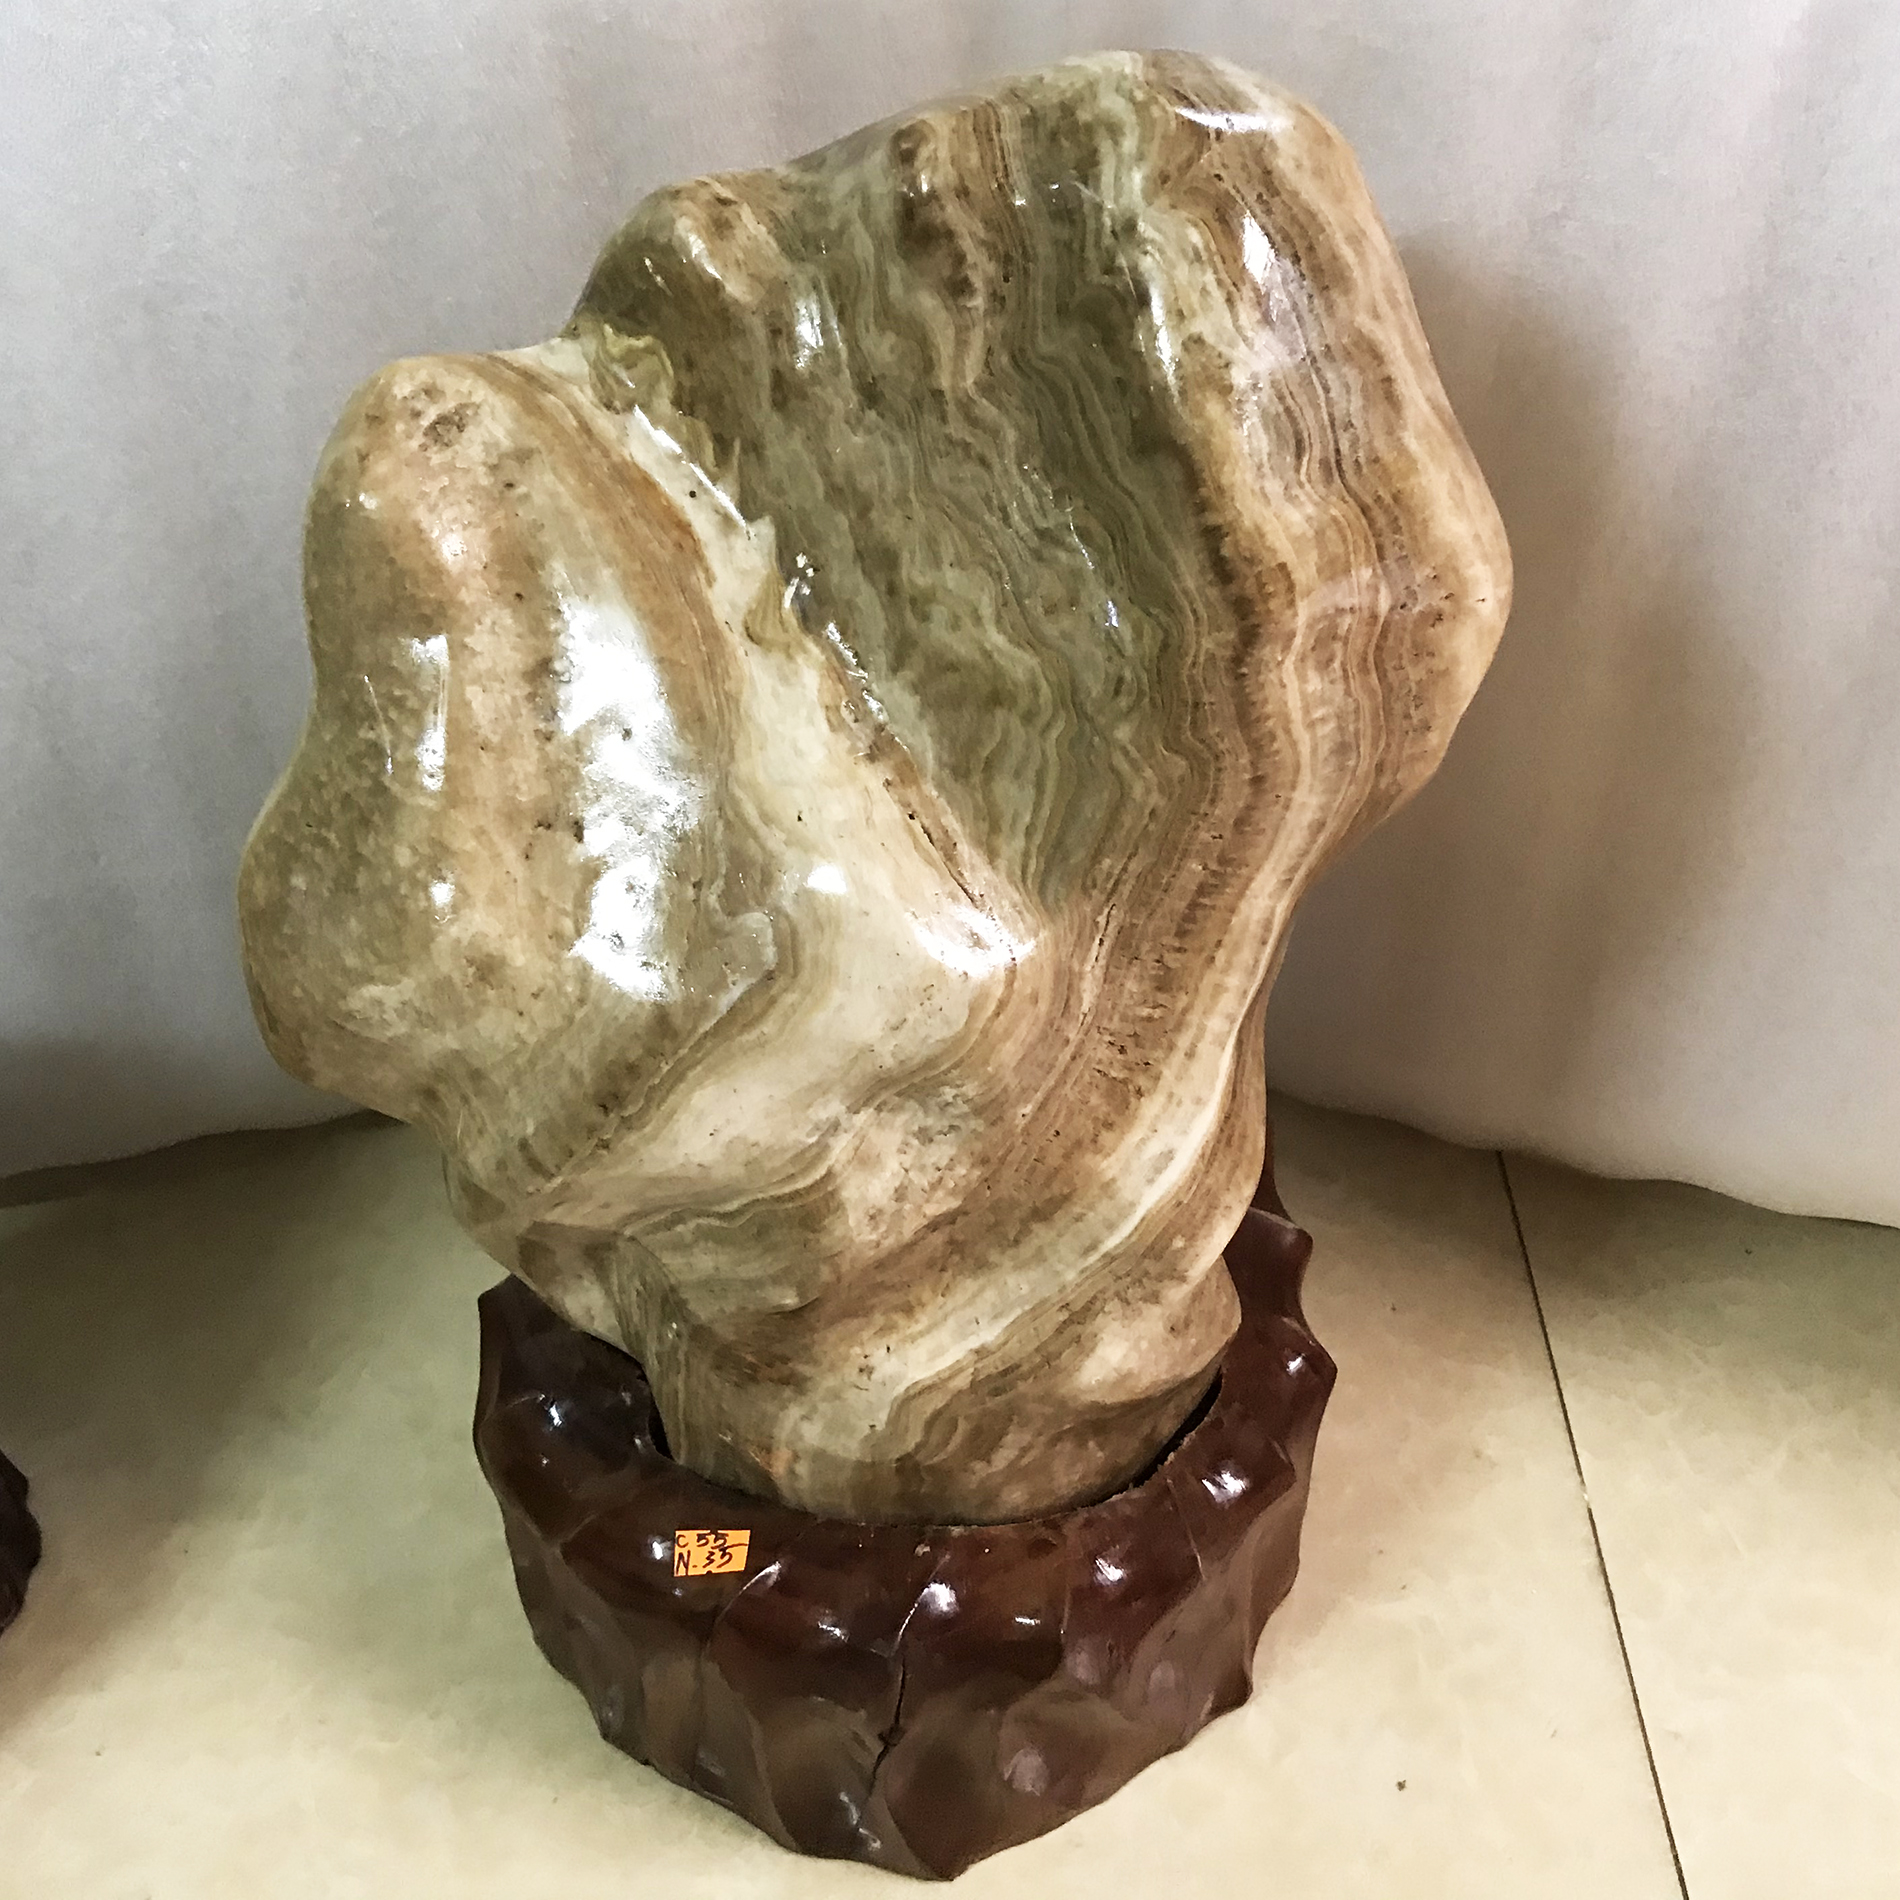 Trụ đá ,cây đá phong thủy tự nhiên màu vàng nâu cao hơn 50 cm, nặng hơn 30 kg cho mệnh Kim và thổ đá cnxite